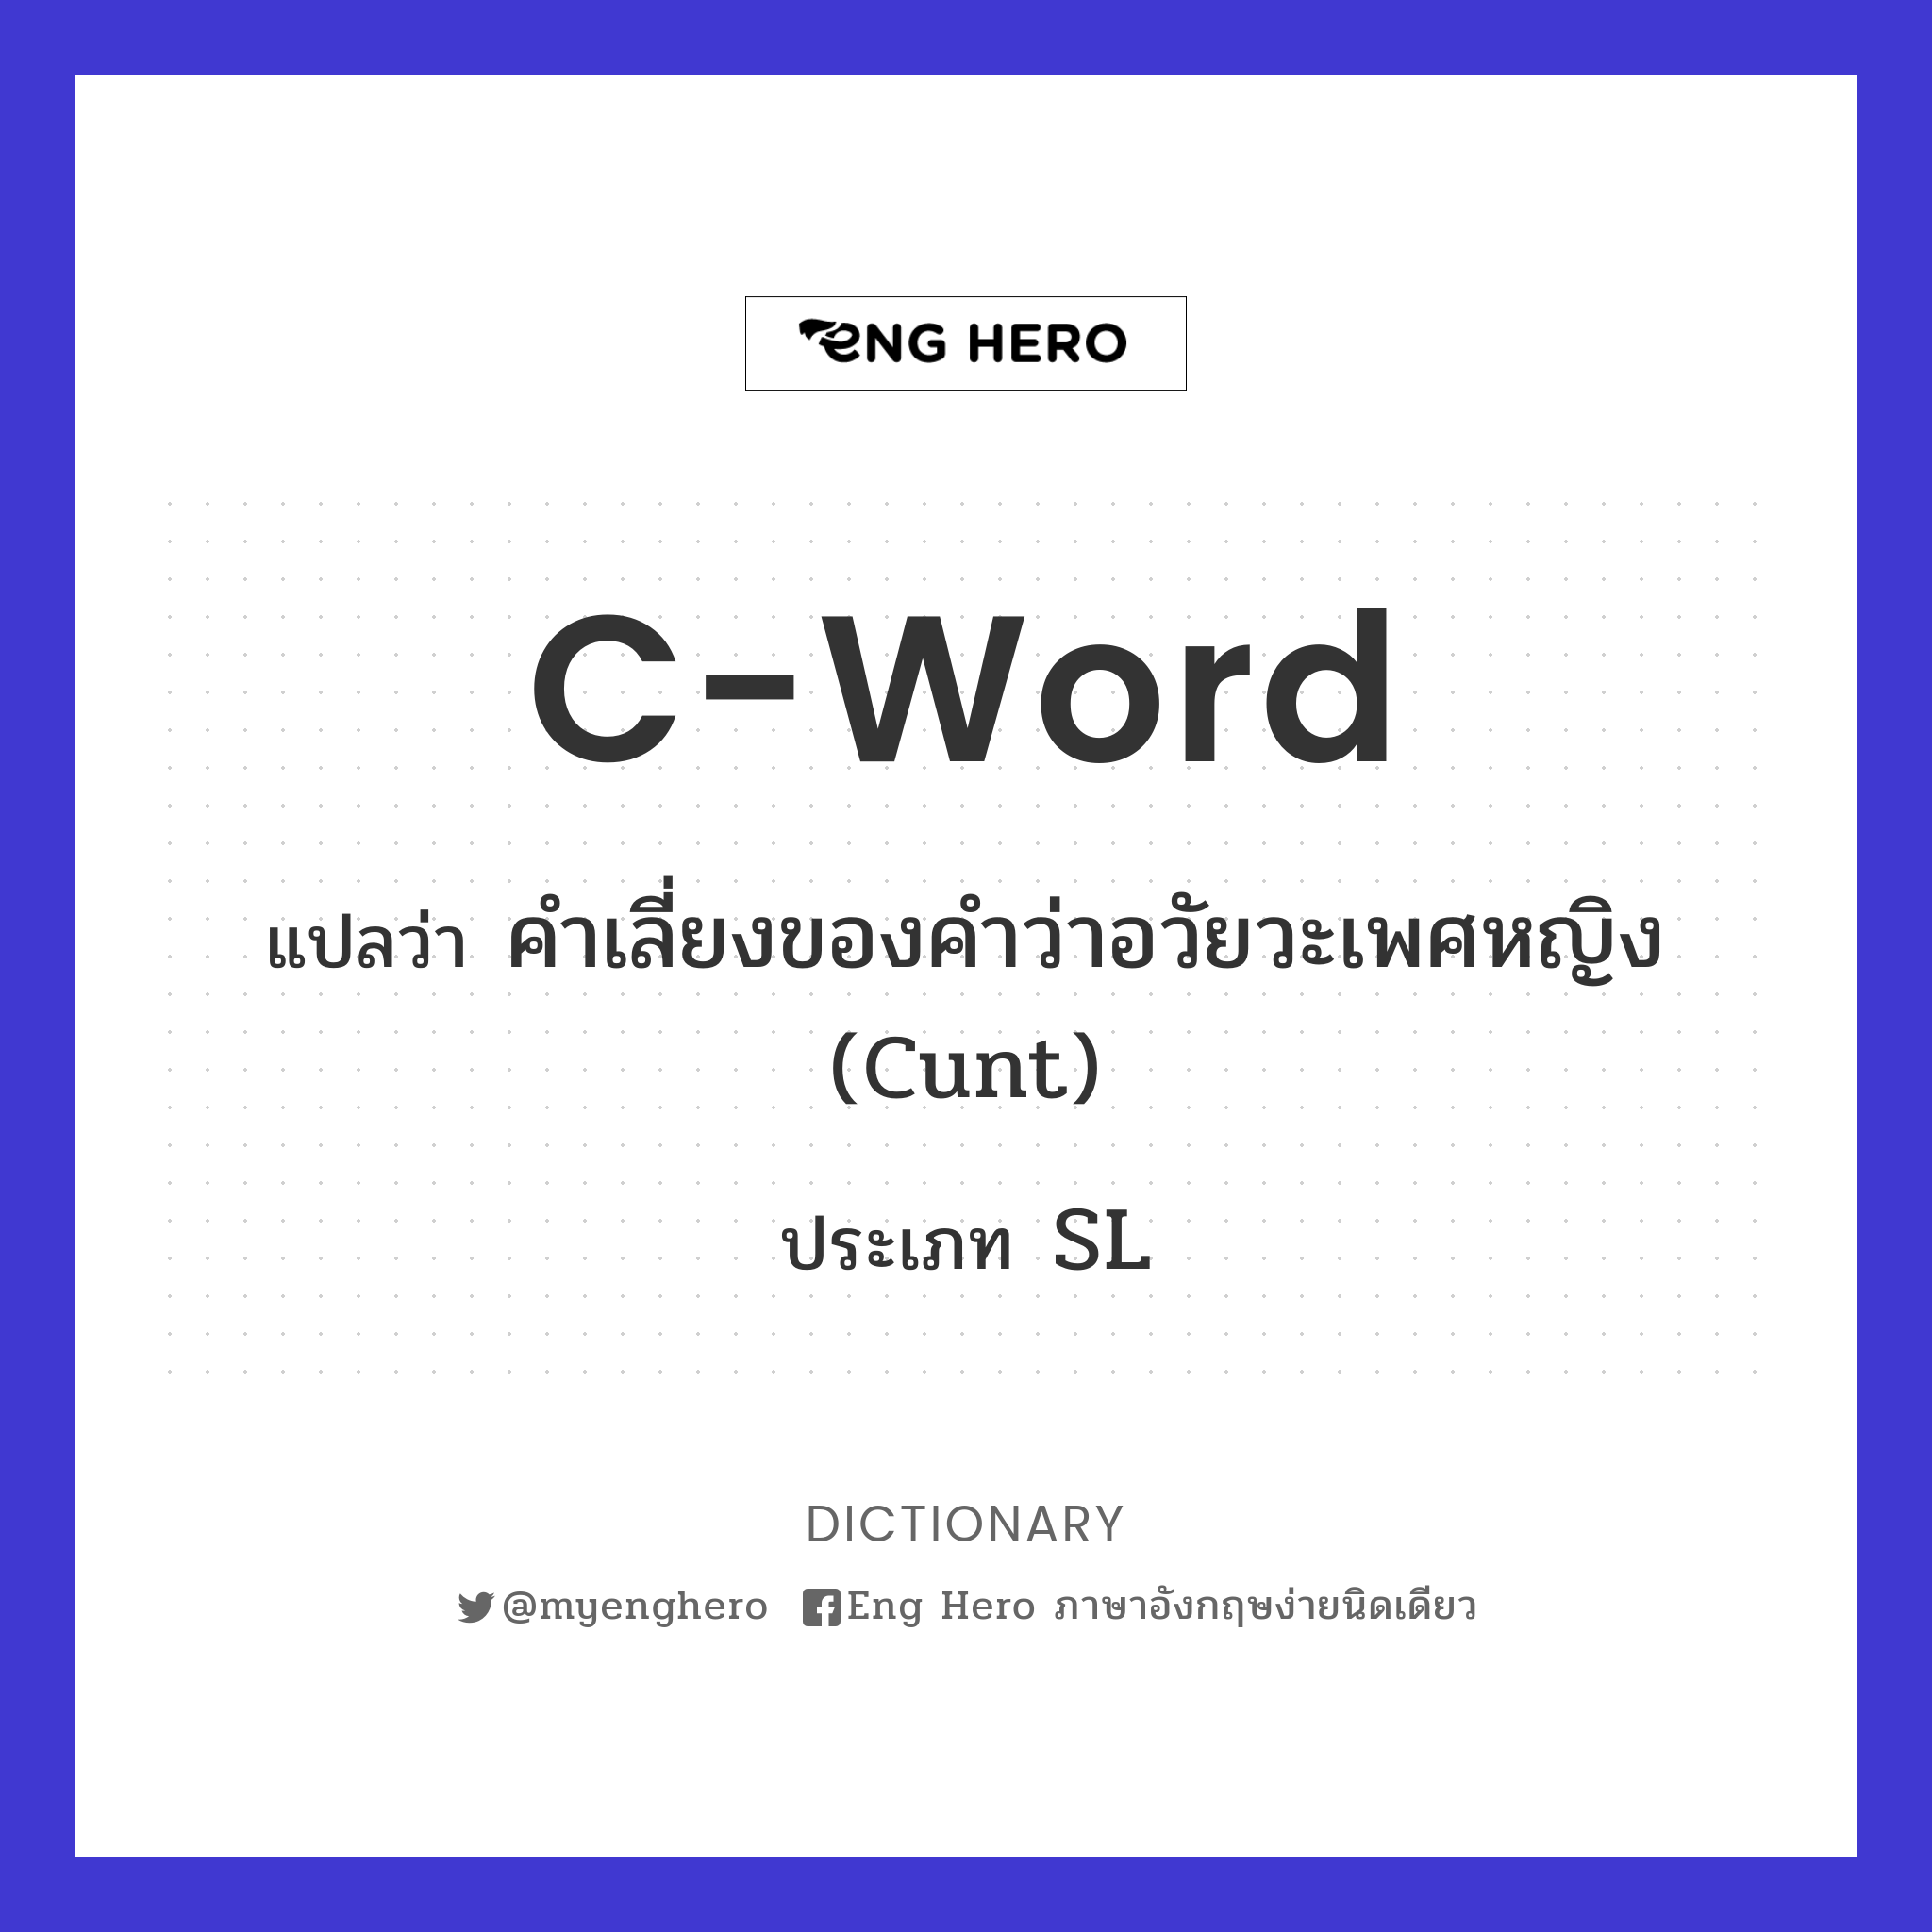 C-word